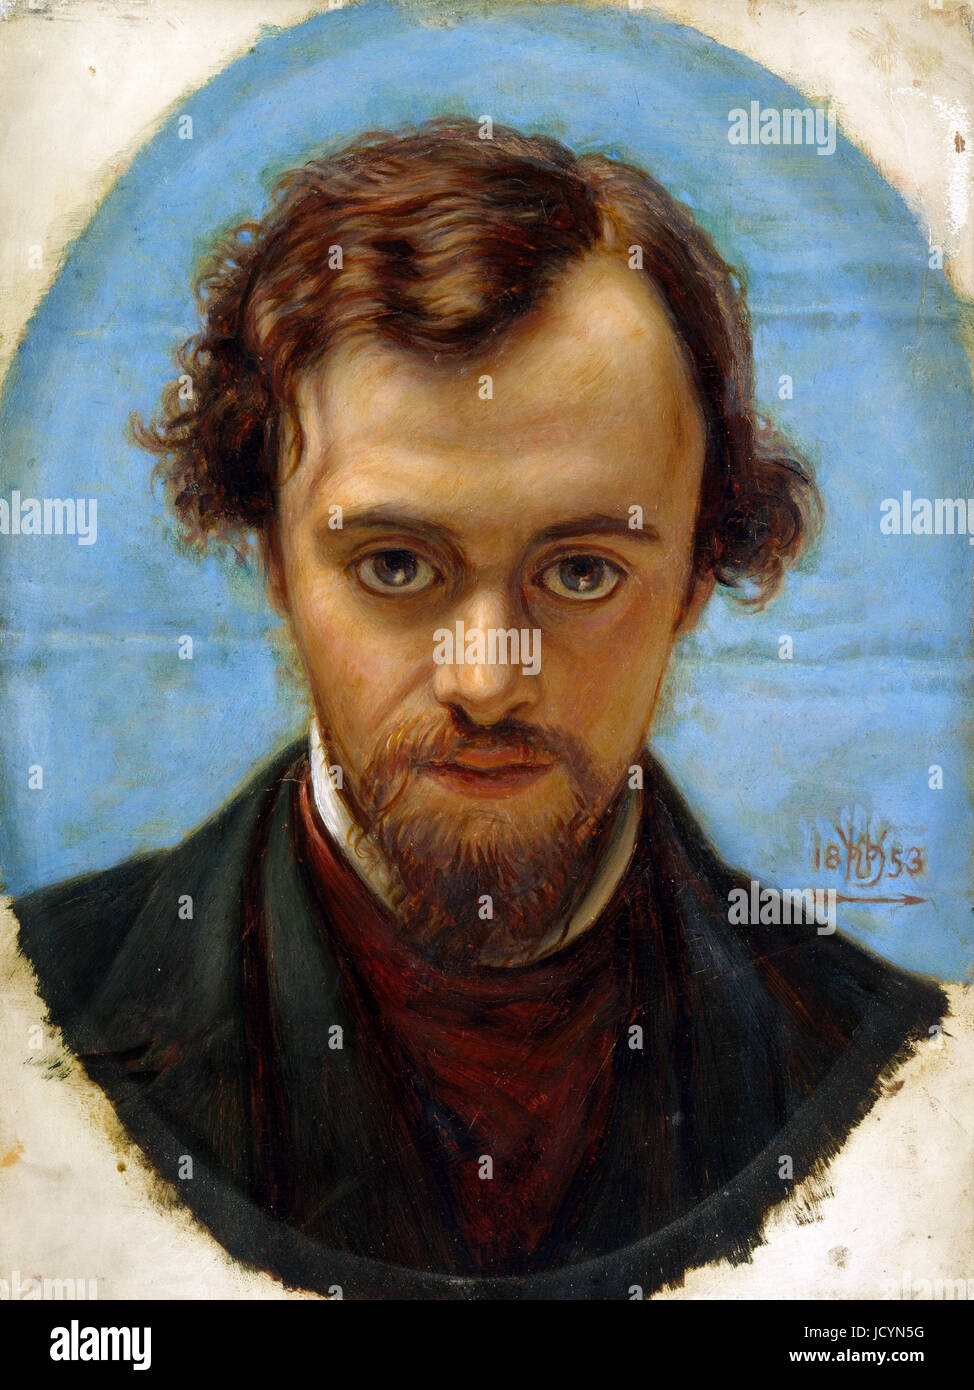 William Holman Hunt, Portrait de Dante Gabriel Rossetti à l'âge de 22 ans. 1882-1883 Huile sur panneau. Birmingham Museum and Art Gallery, en Angleterre. Banque D'Images